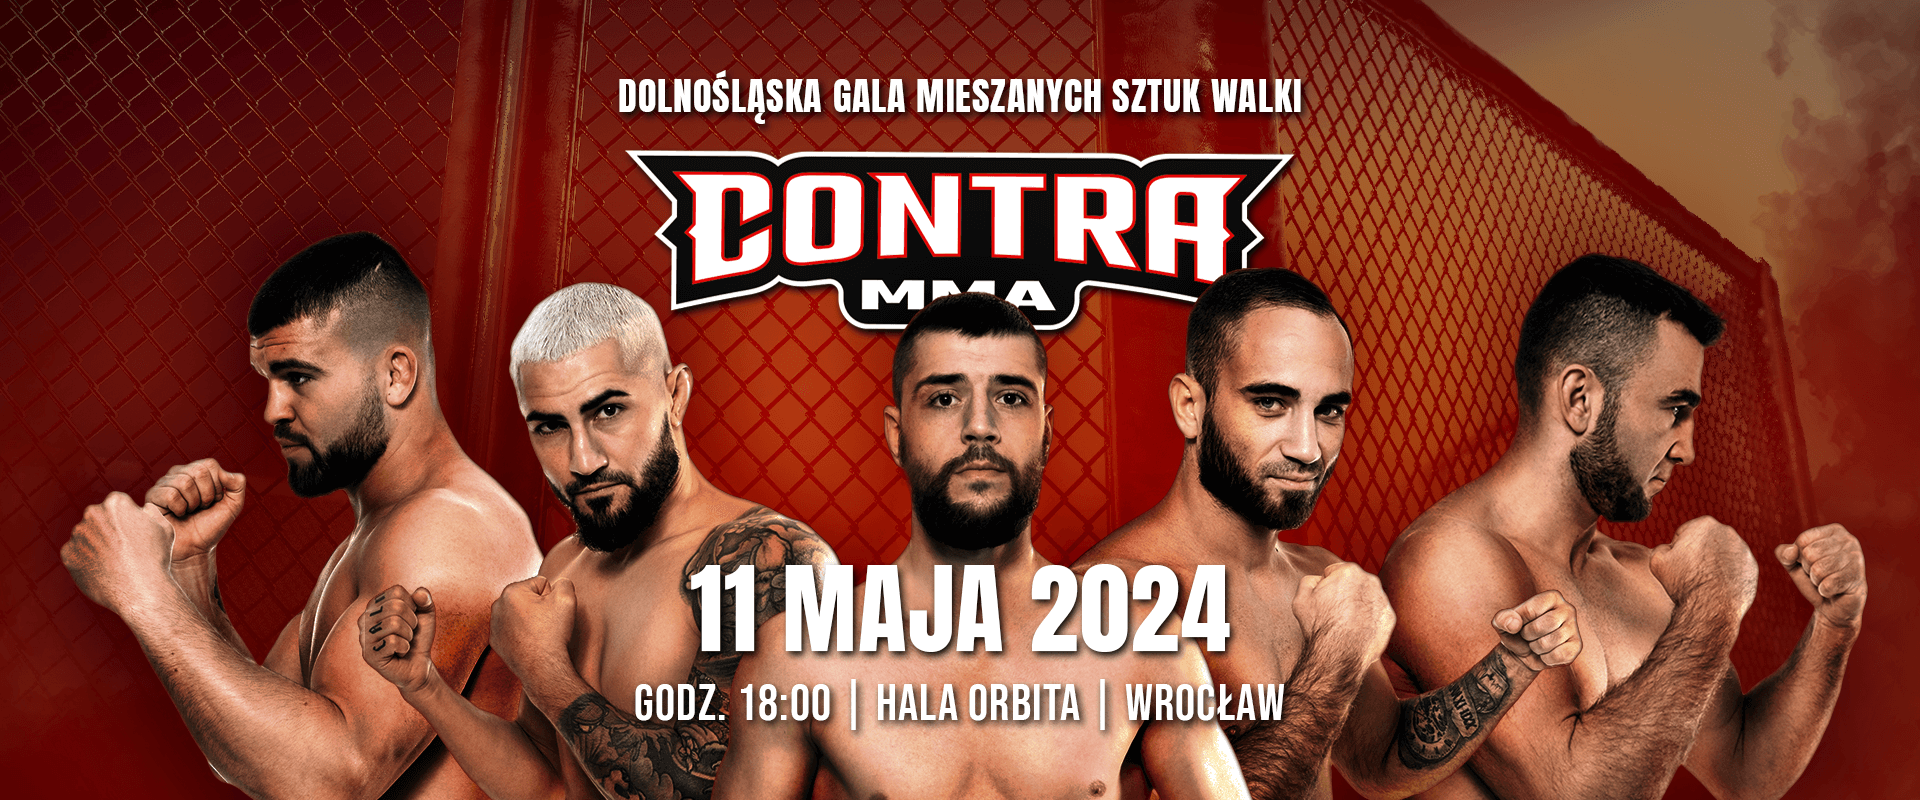 CONTRA MMA 5 2a